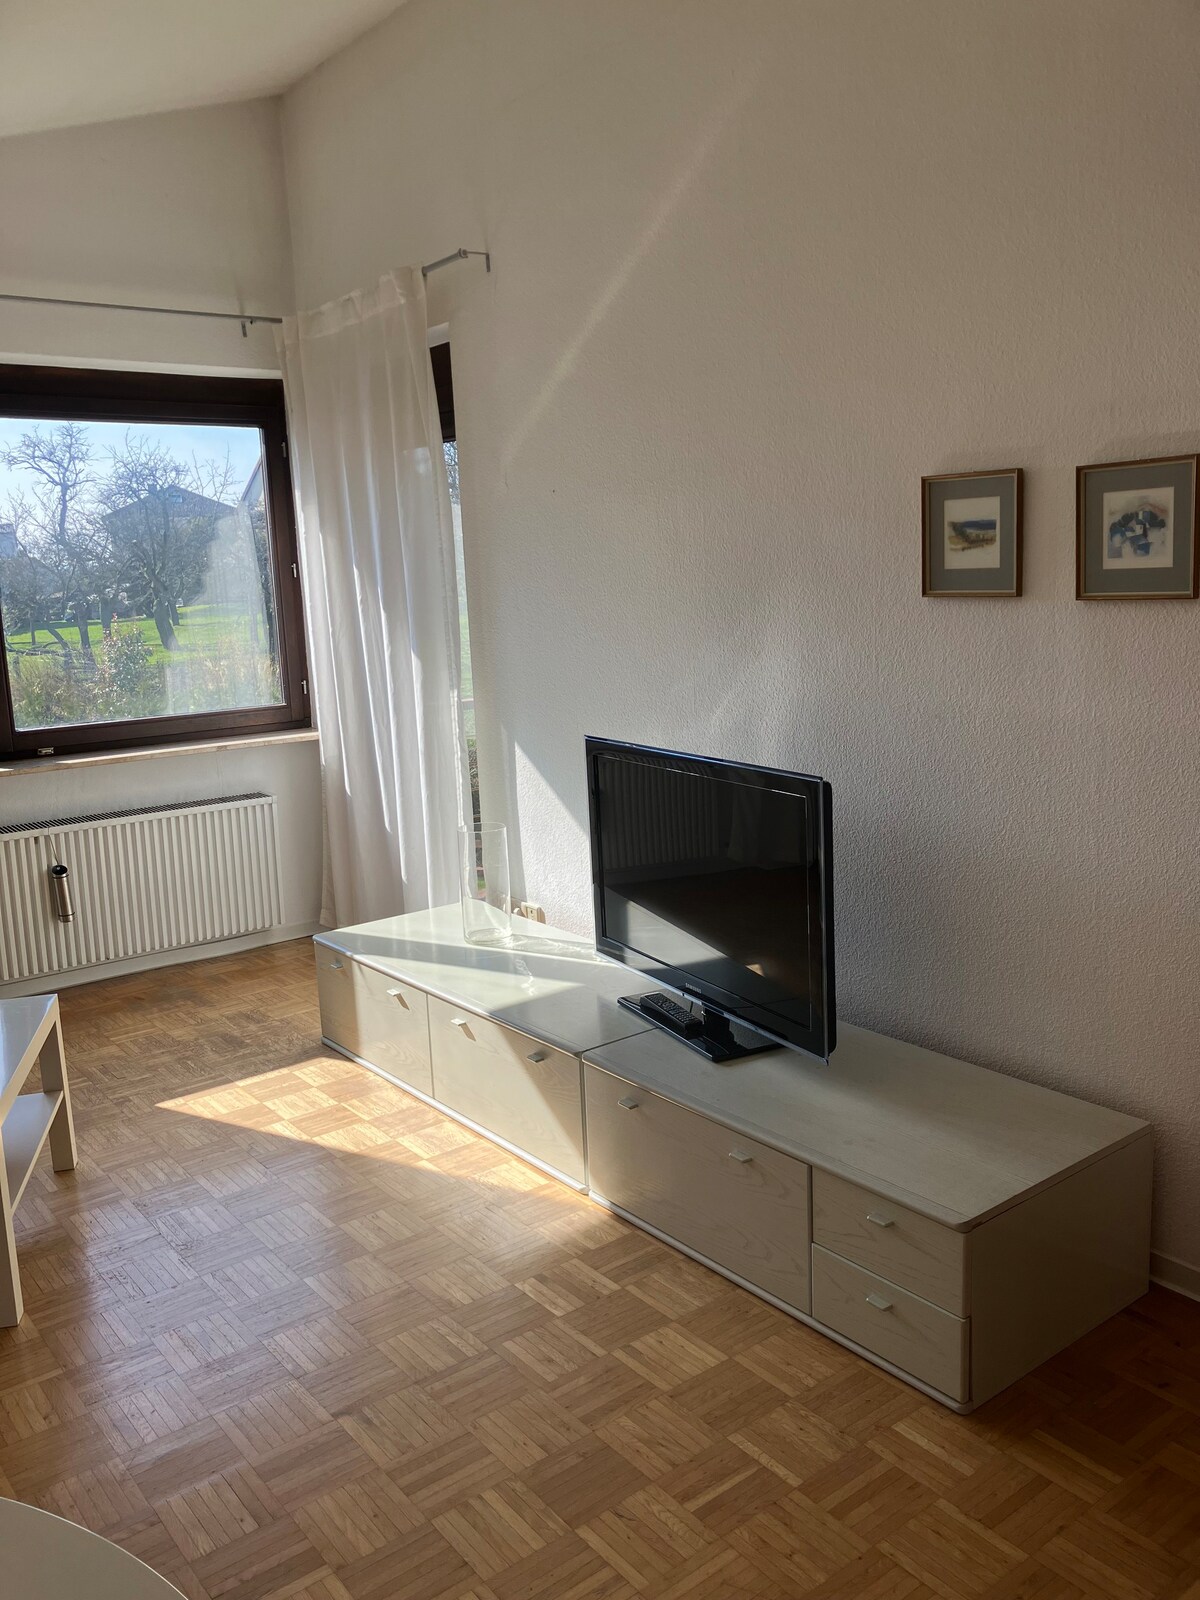 Apartment in Friedrichsdorf, Wohnen und Arbeiten